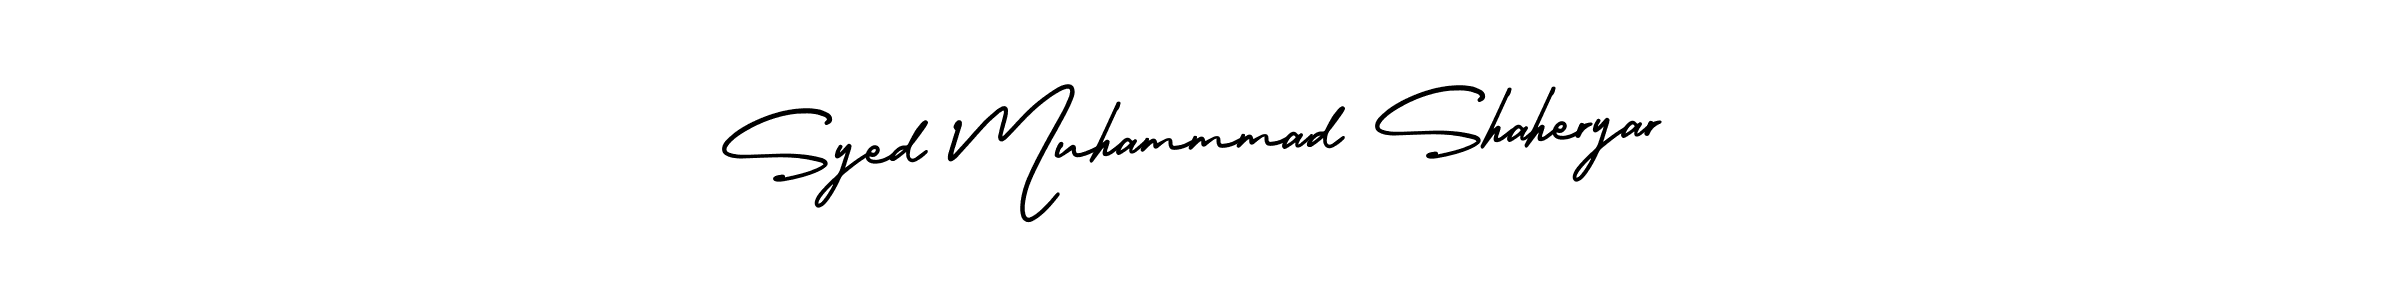 Best and Professional Signature Style for Syed Muhammmad Shaheryar. AmerikaSignatureDemo-Regular Best Signature Style Collection. Syed Muhammmad Shaheryar signature style 3 images and pictures png